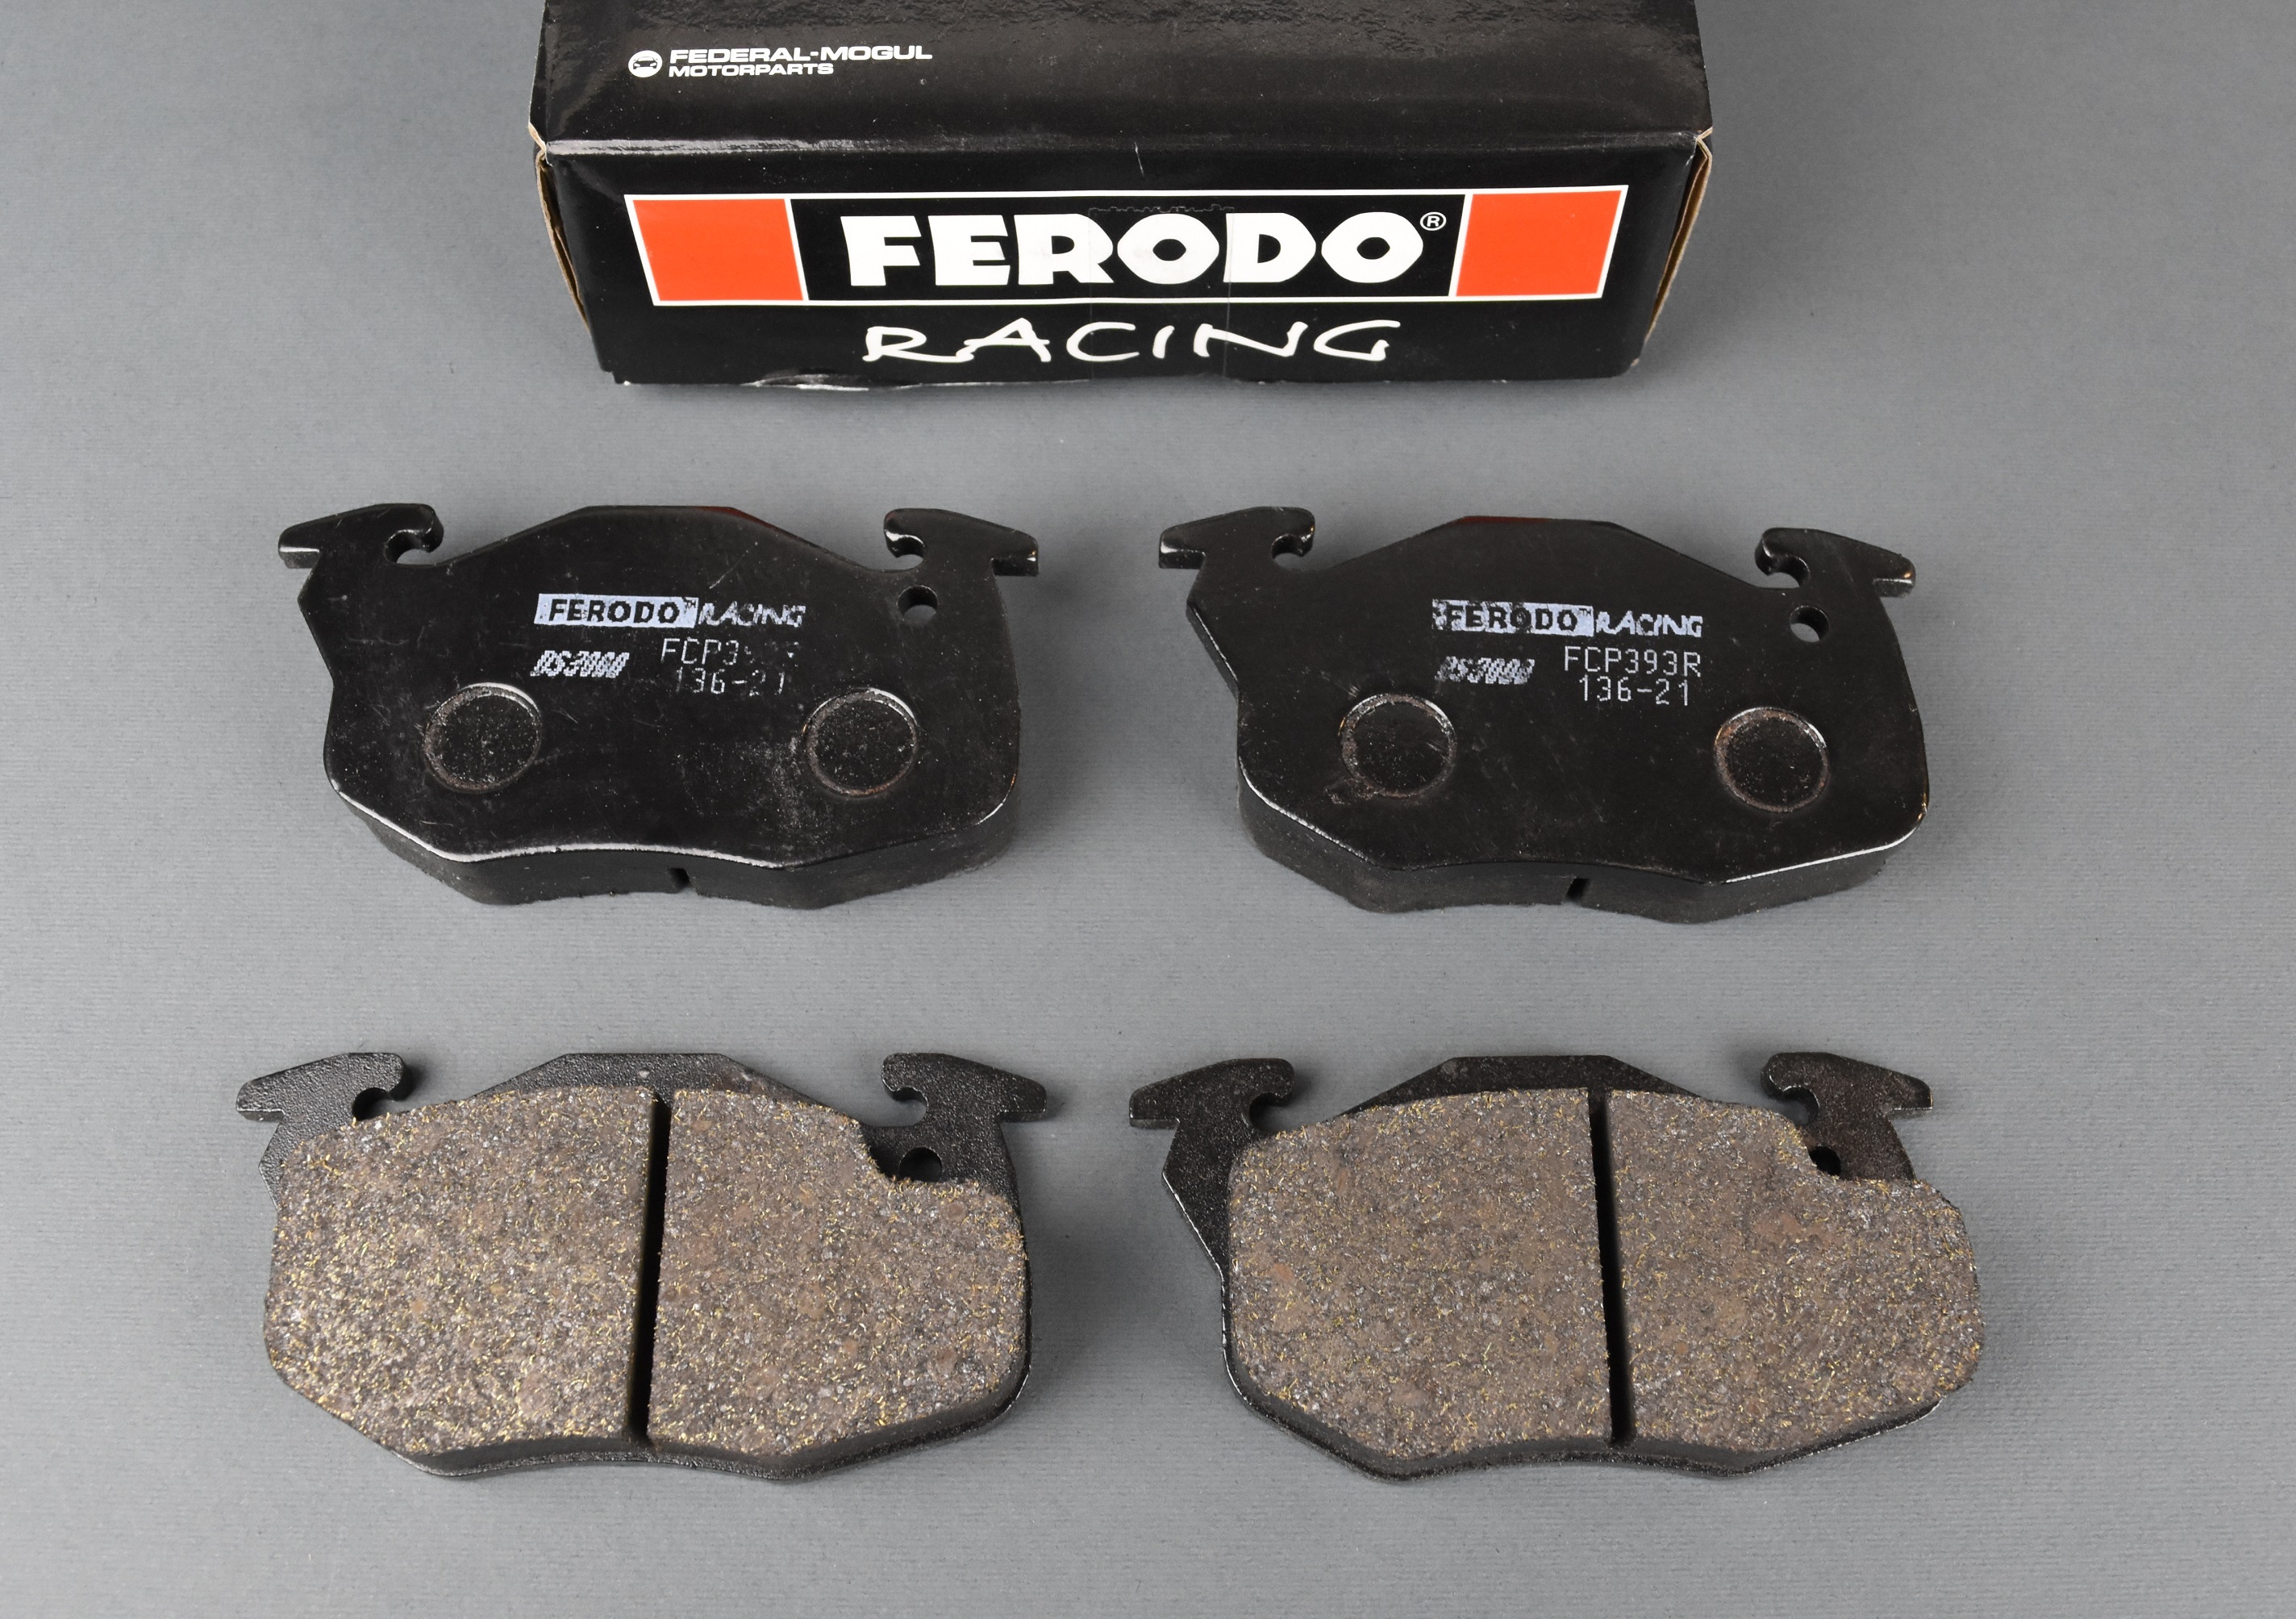 Pastiglie freno anteriori Ferodo Racing Peugeot 206 RC (pinza di serie)